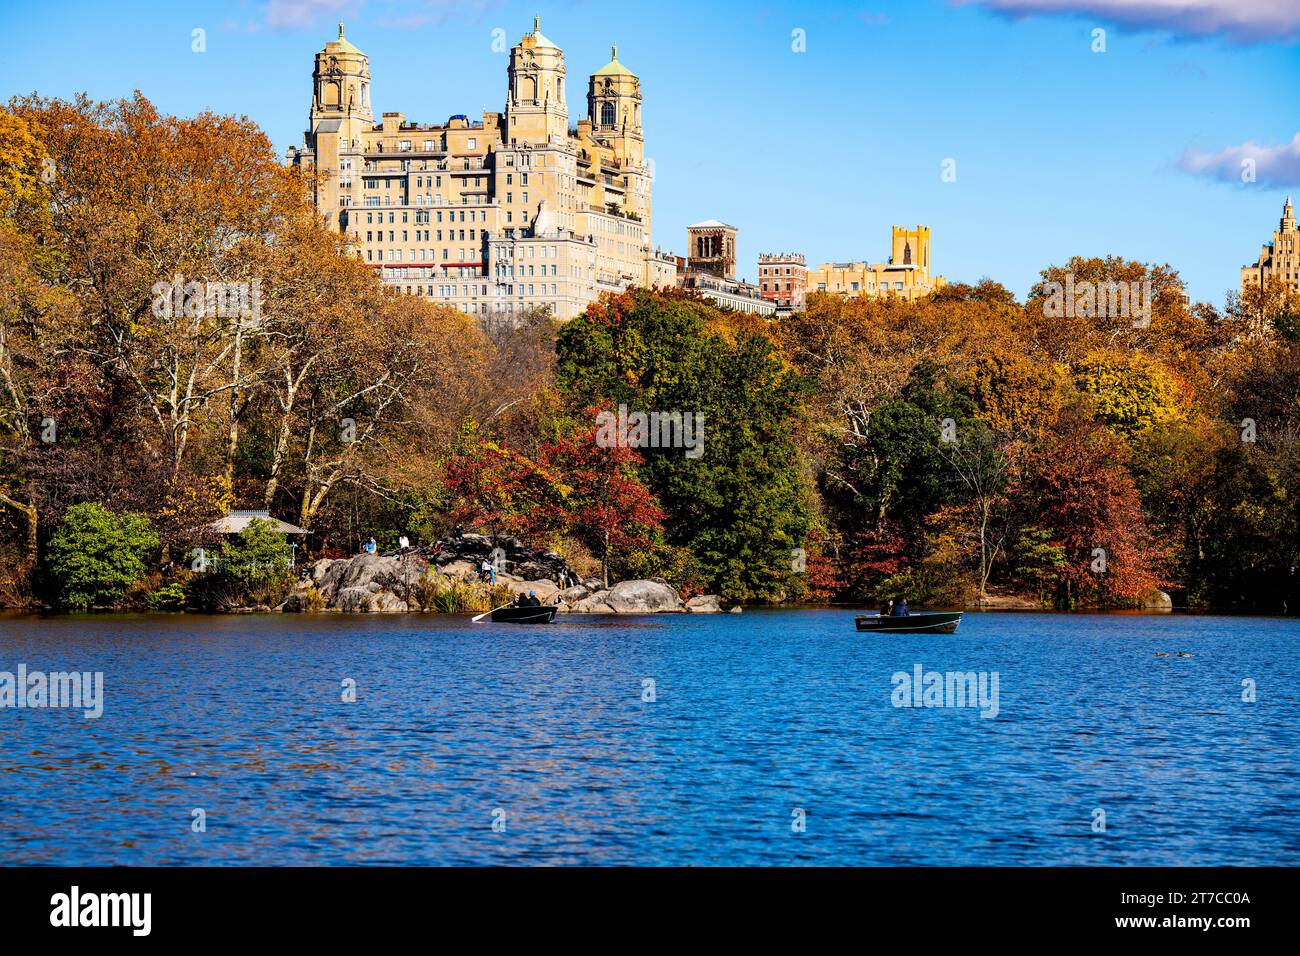 I grattacieli si stagliano sopra gli alberi multicolori dell'autunno a Central Park NY, un'area di Manhattan ricca di tranquillità e natura. Foto Stock